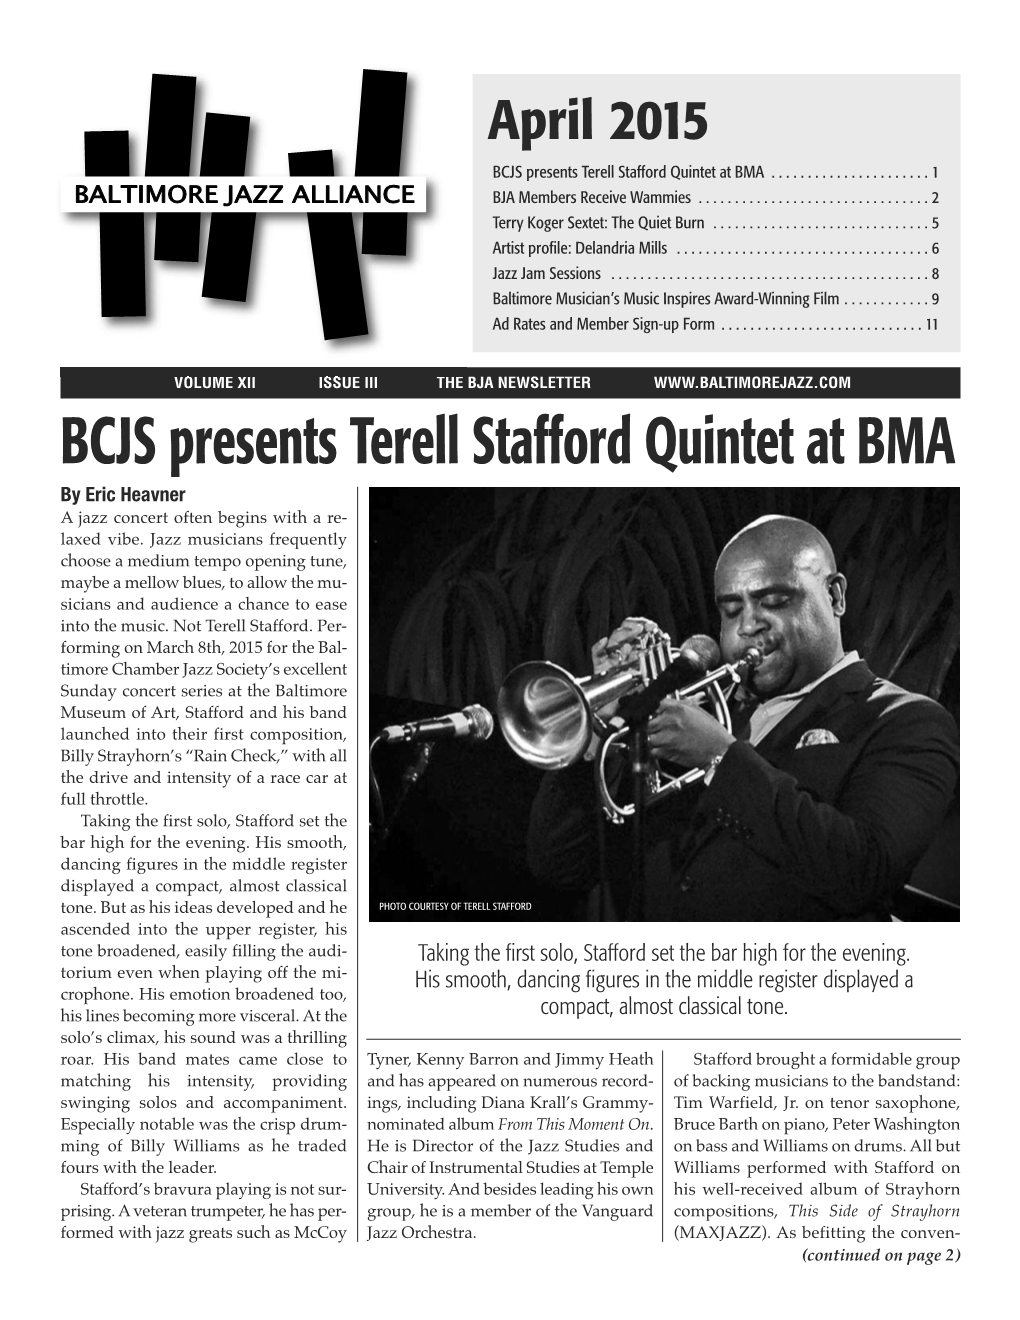 BCJS Presents Terell Stafford Quintet at BMA